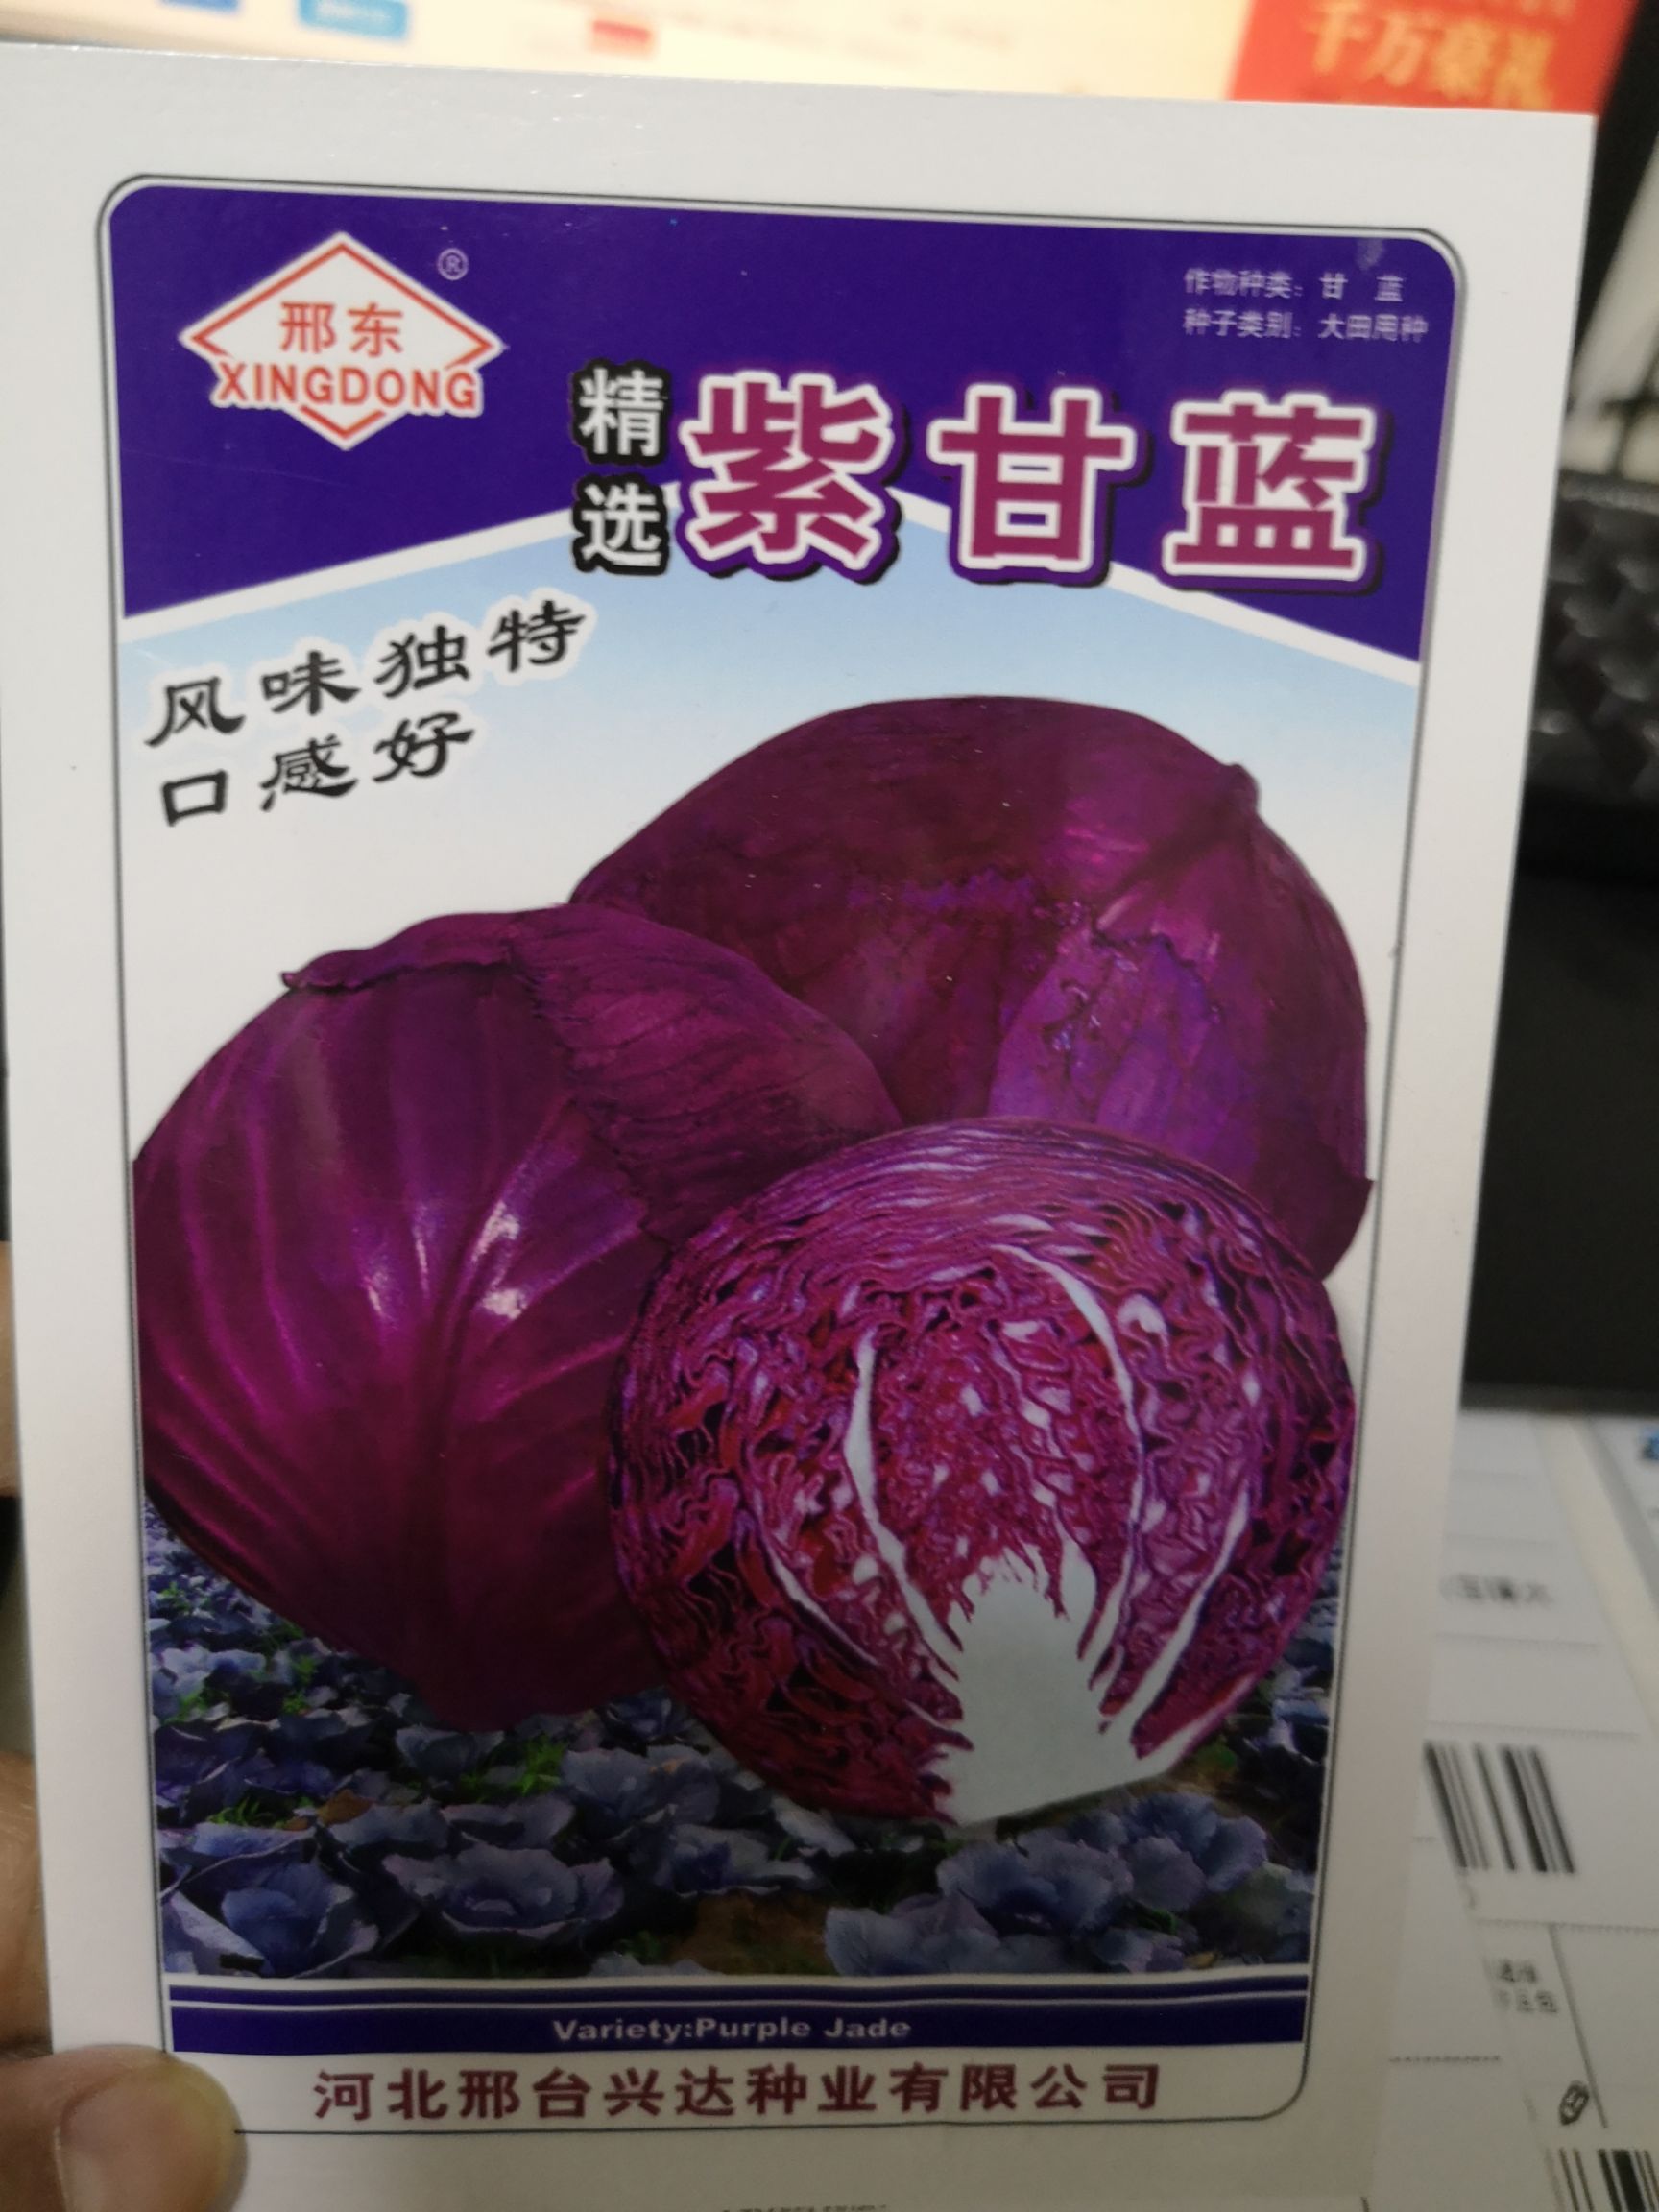 紫甘蓝种子 适合春秋两季使用 叶球紧实 不易开裂 耐运输